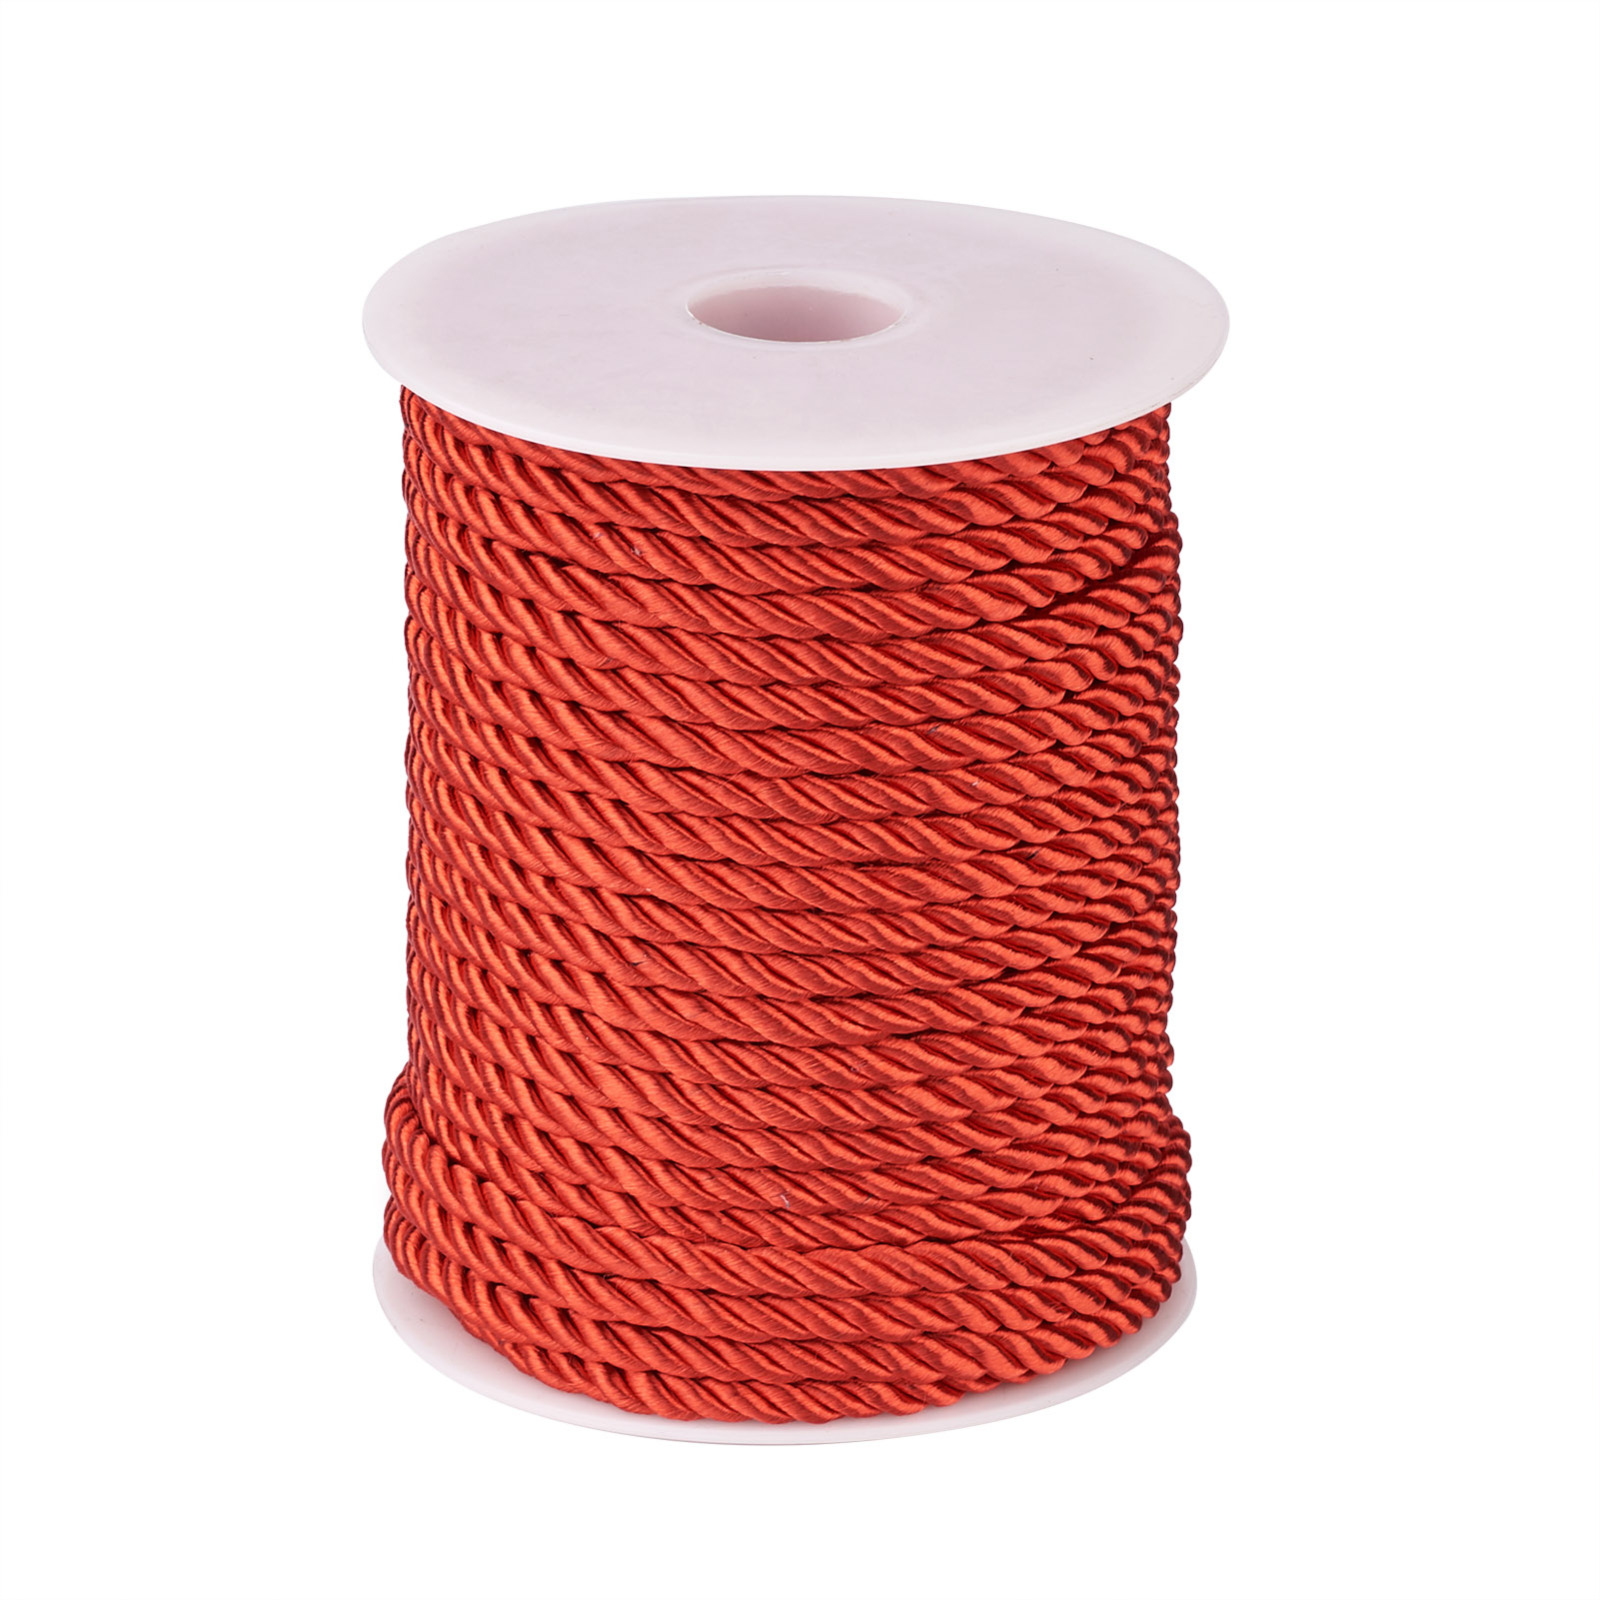  Cuerda de algodón de 2 capas coloridas para bricolaje